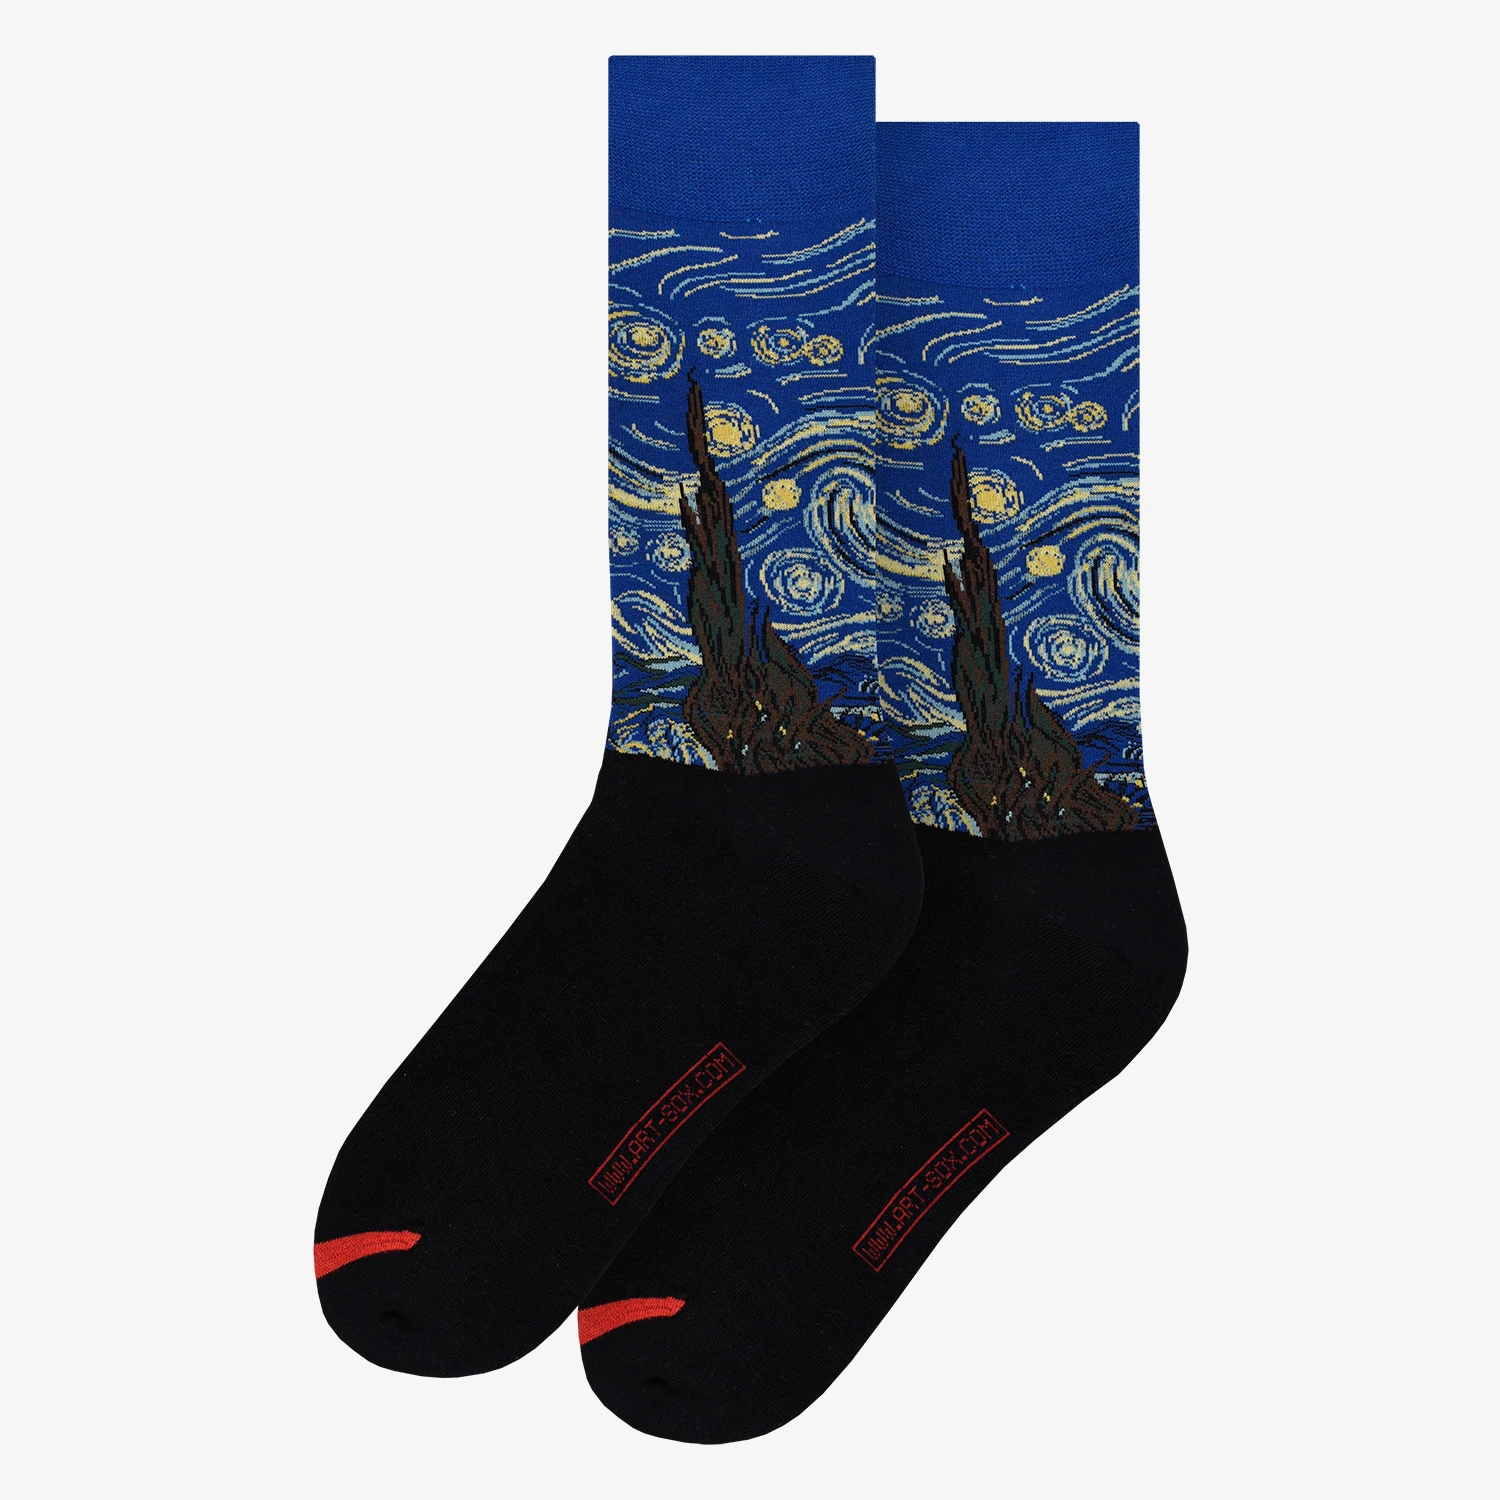 Socken; Vincent van Gogh - Starry Night; Baumwolle (80%), Polyamid (18%), Elastan (2%); blau, braun,  gelb, schwarz; 36-40; MuseARTa